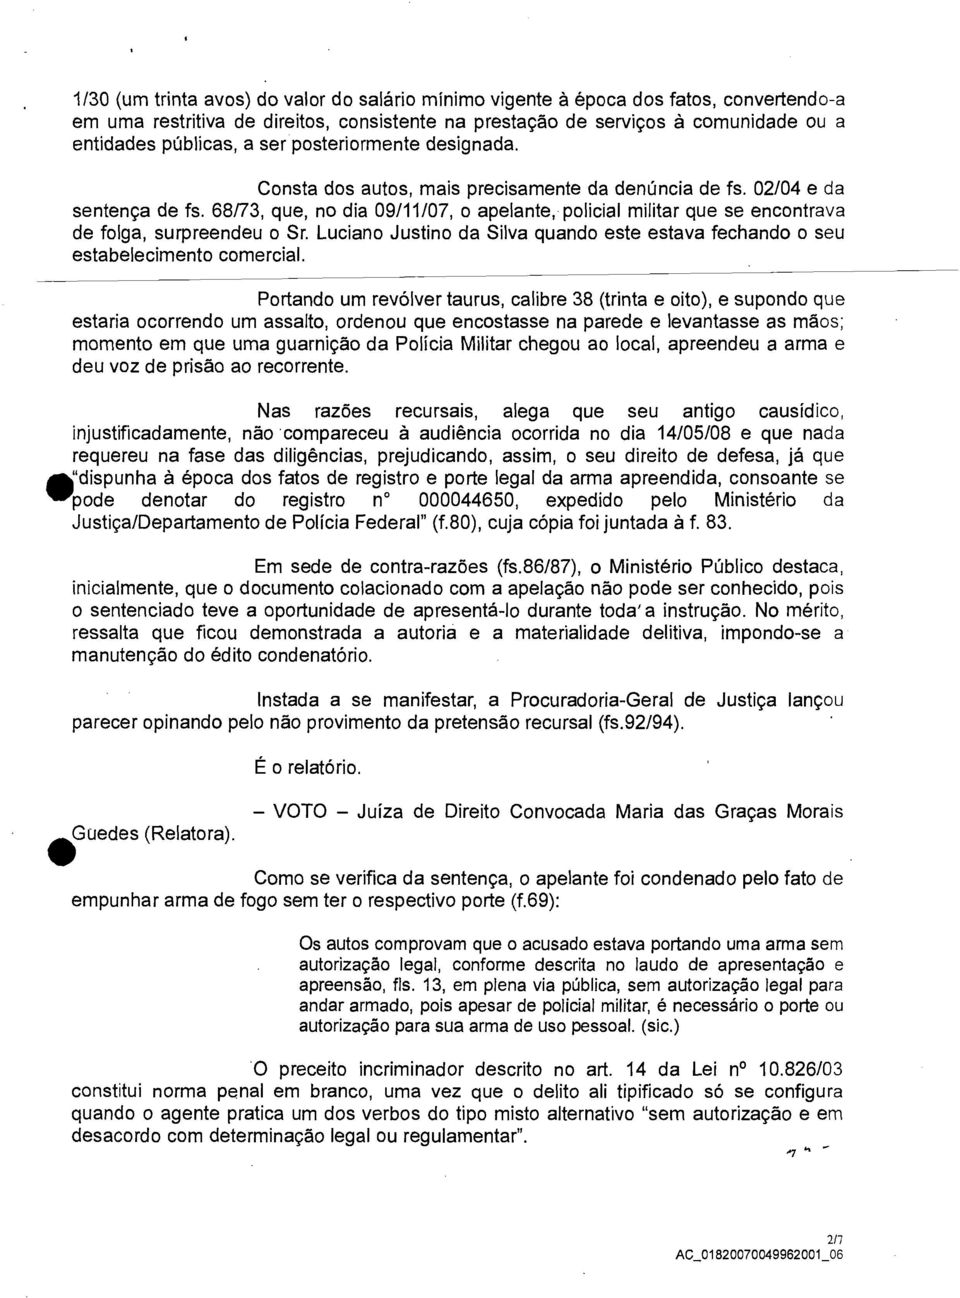 68/73, que, no dia 09/11/07, o apelante, policial militar que se encontrava de folga, surpreendeu o Sr. Luciano Justino da Silva quando este estava fechando o seu estabelecimento comercial.